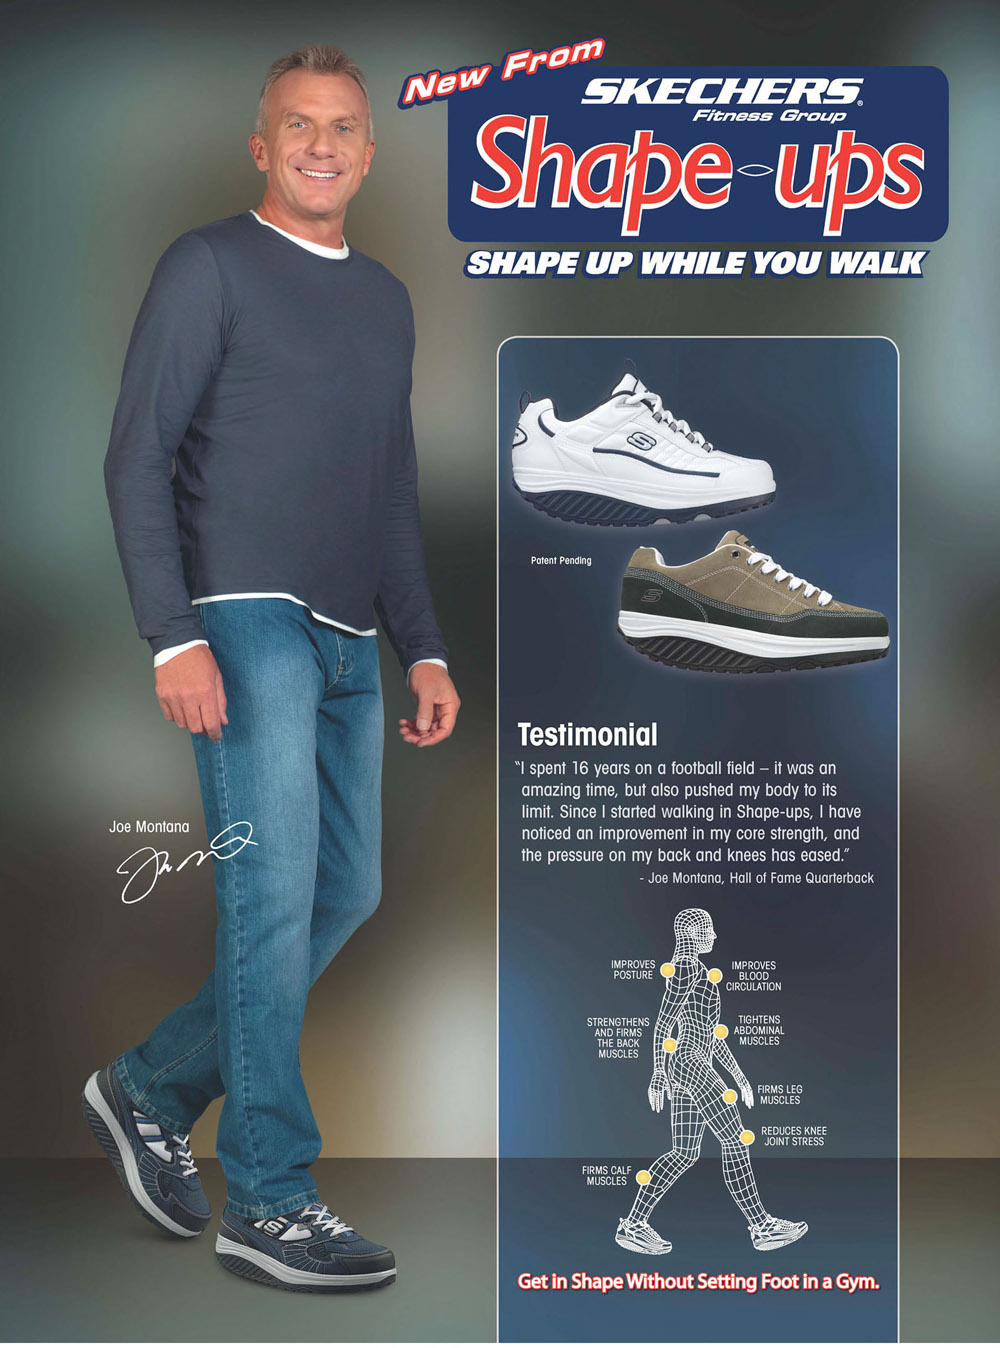 Joe Montana Endorses Skechers Shape-ups